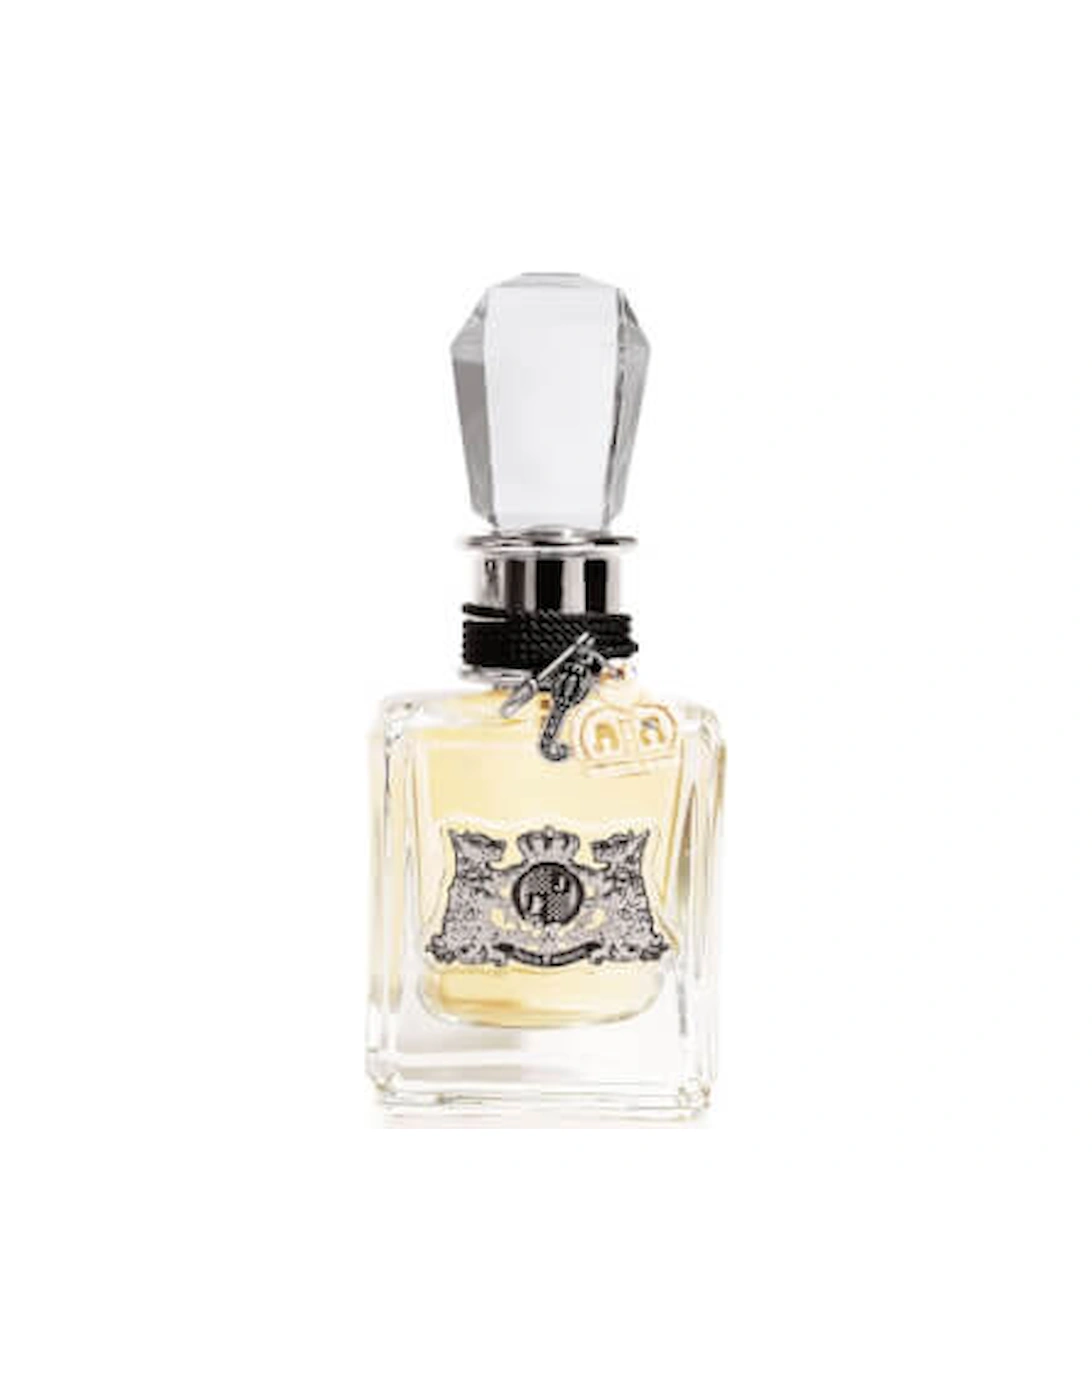 Eau de Parfum 50ml - Juicy Couture, 2 of 1